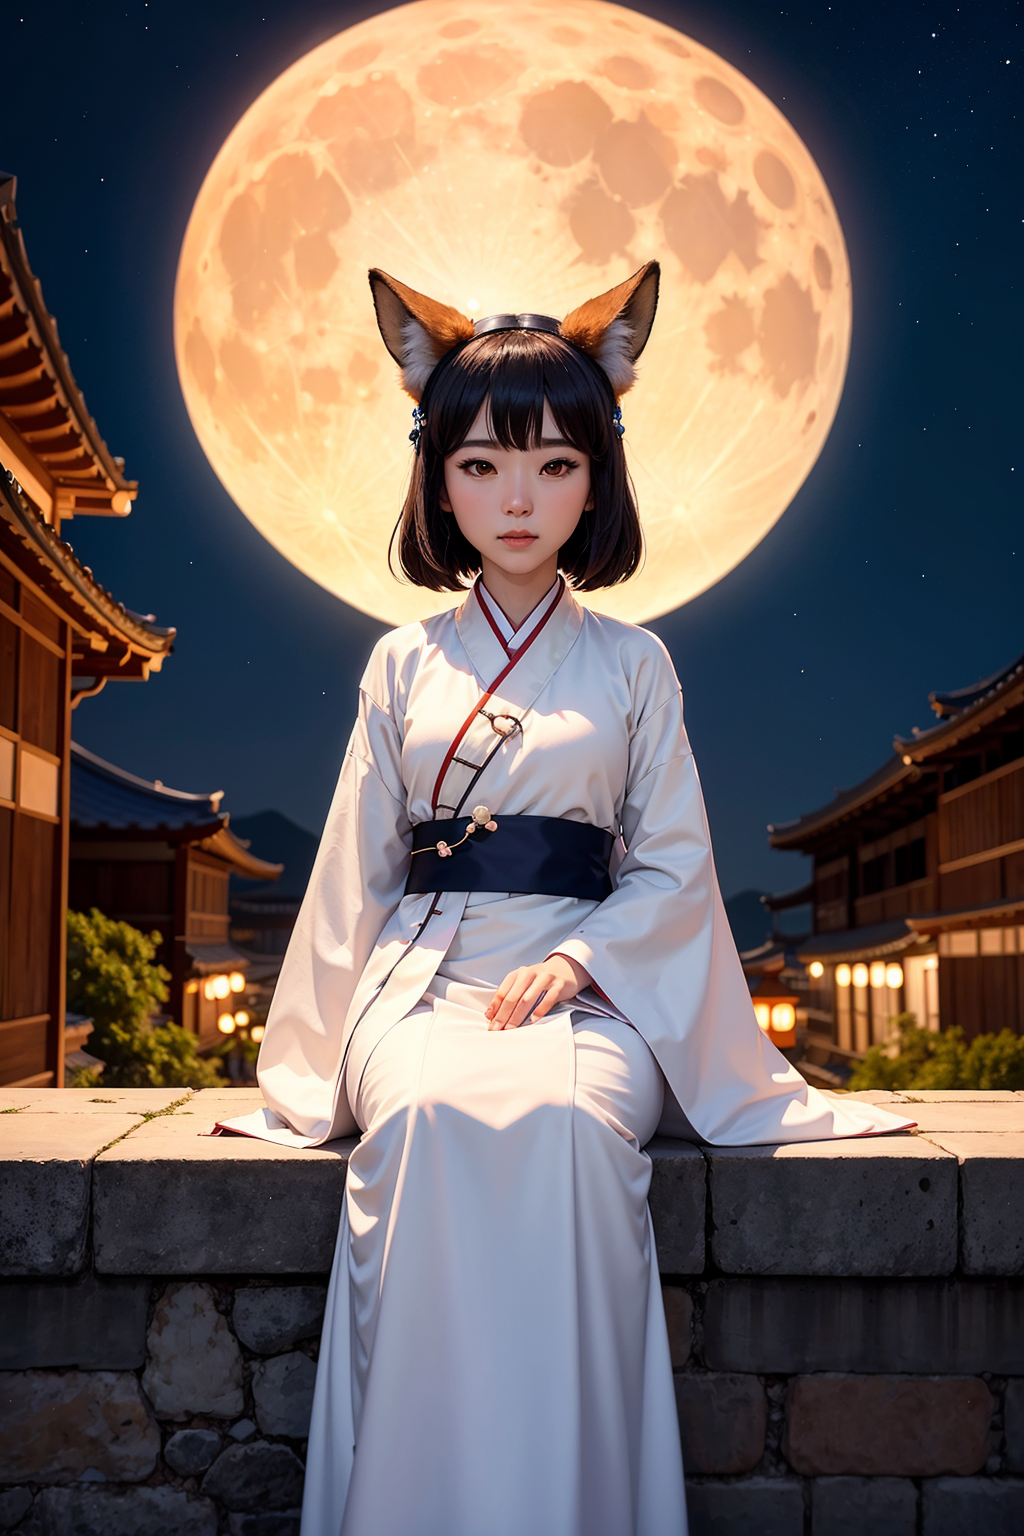 foxgirl watching night sky, watching moon, wearing a hanfu